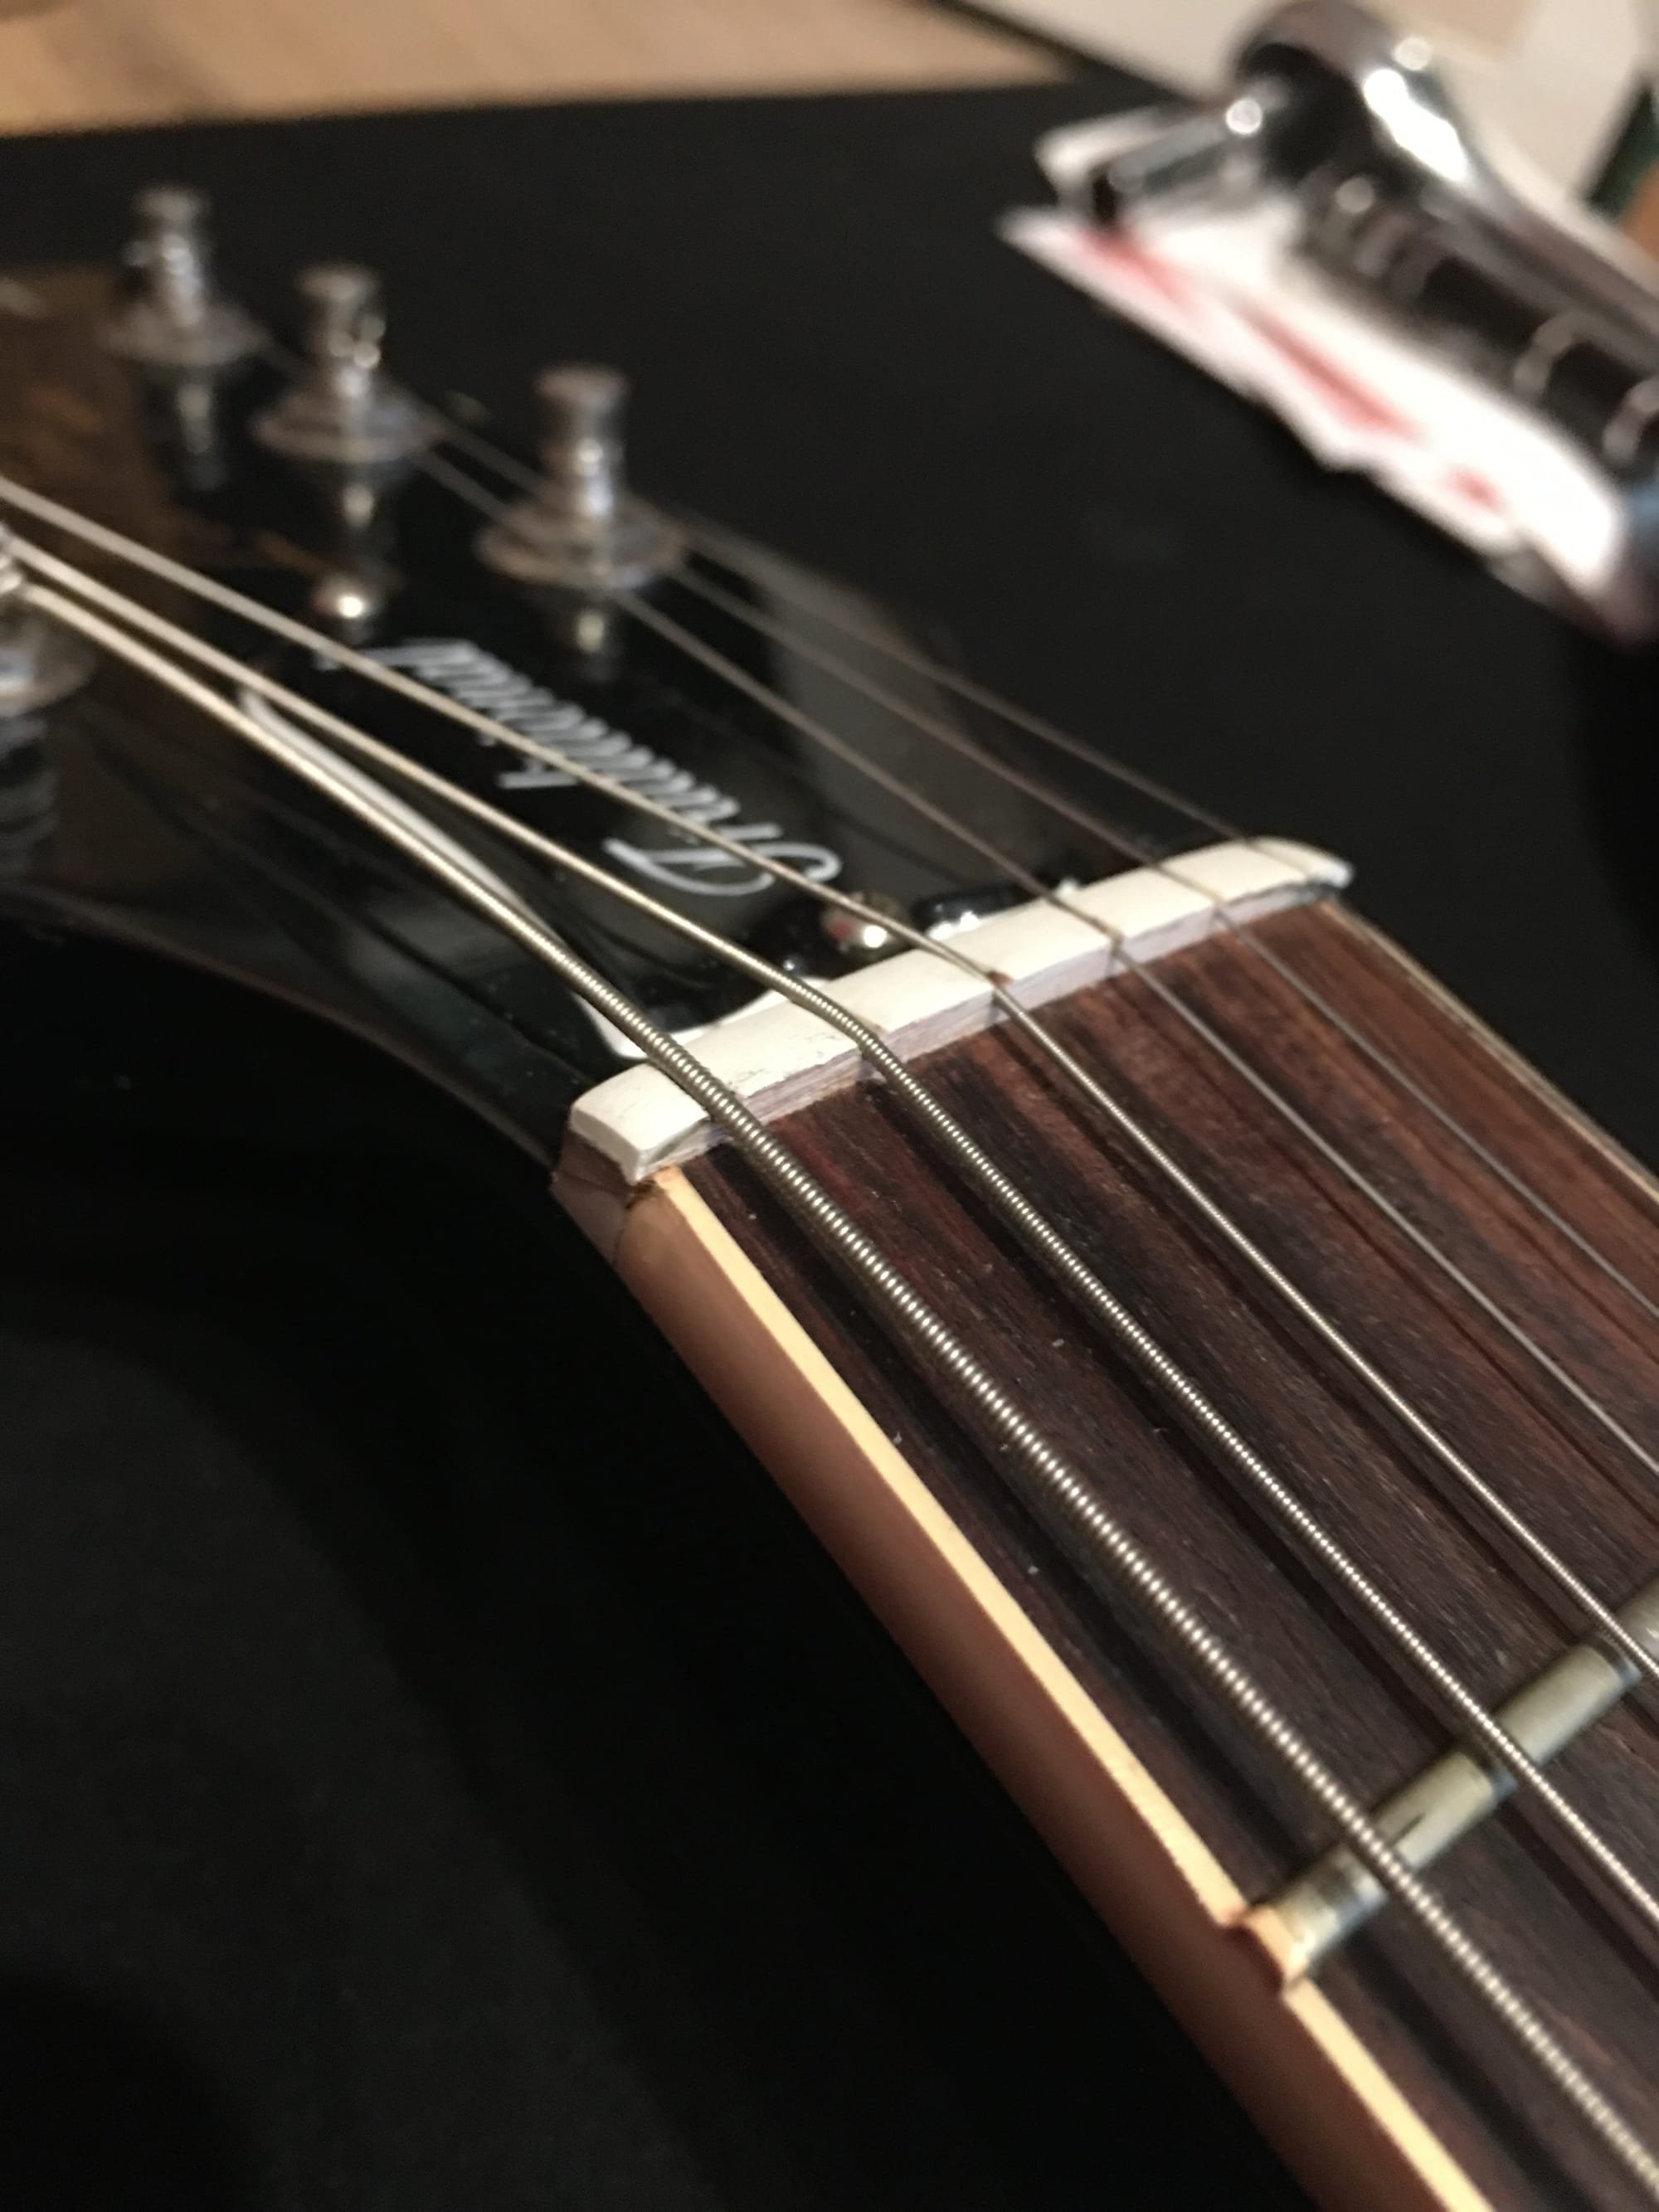 Gibson LP Standard